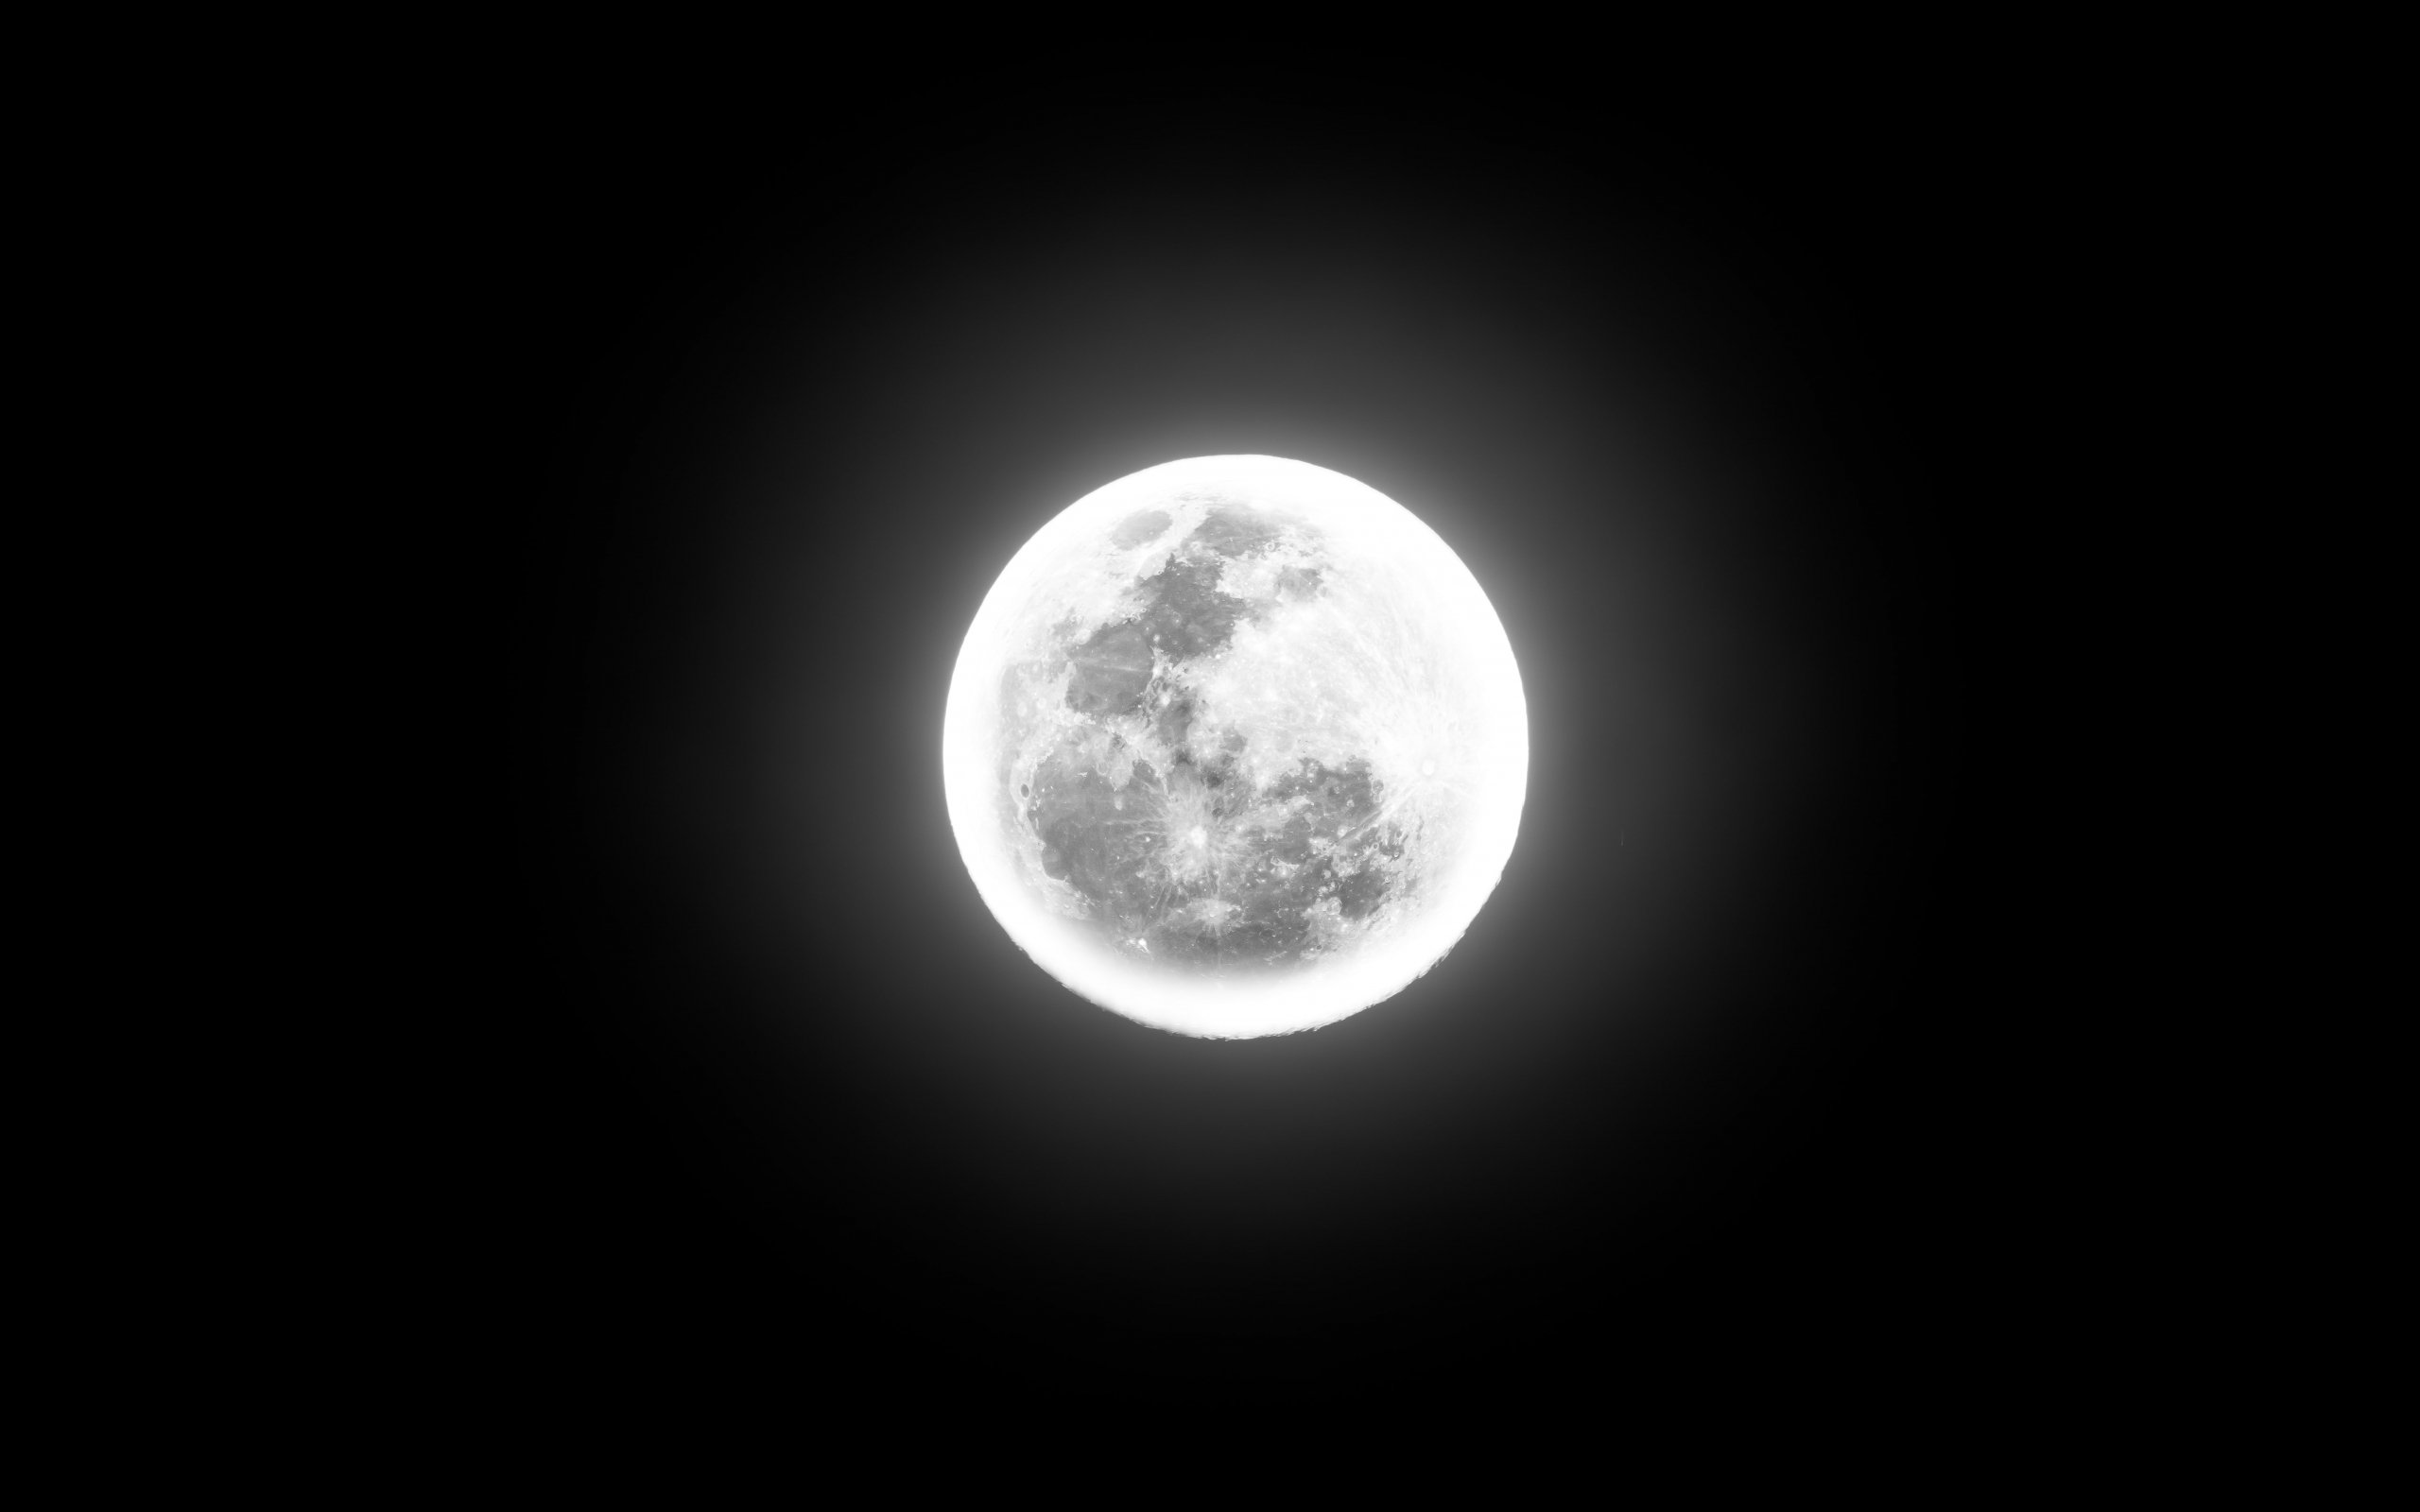 Halo Луны. Луна очень близко к земле. Mond. Теория mond.